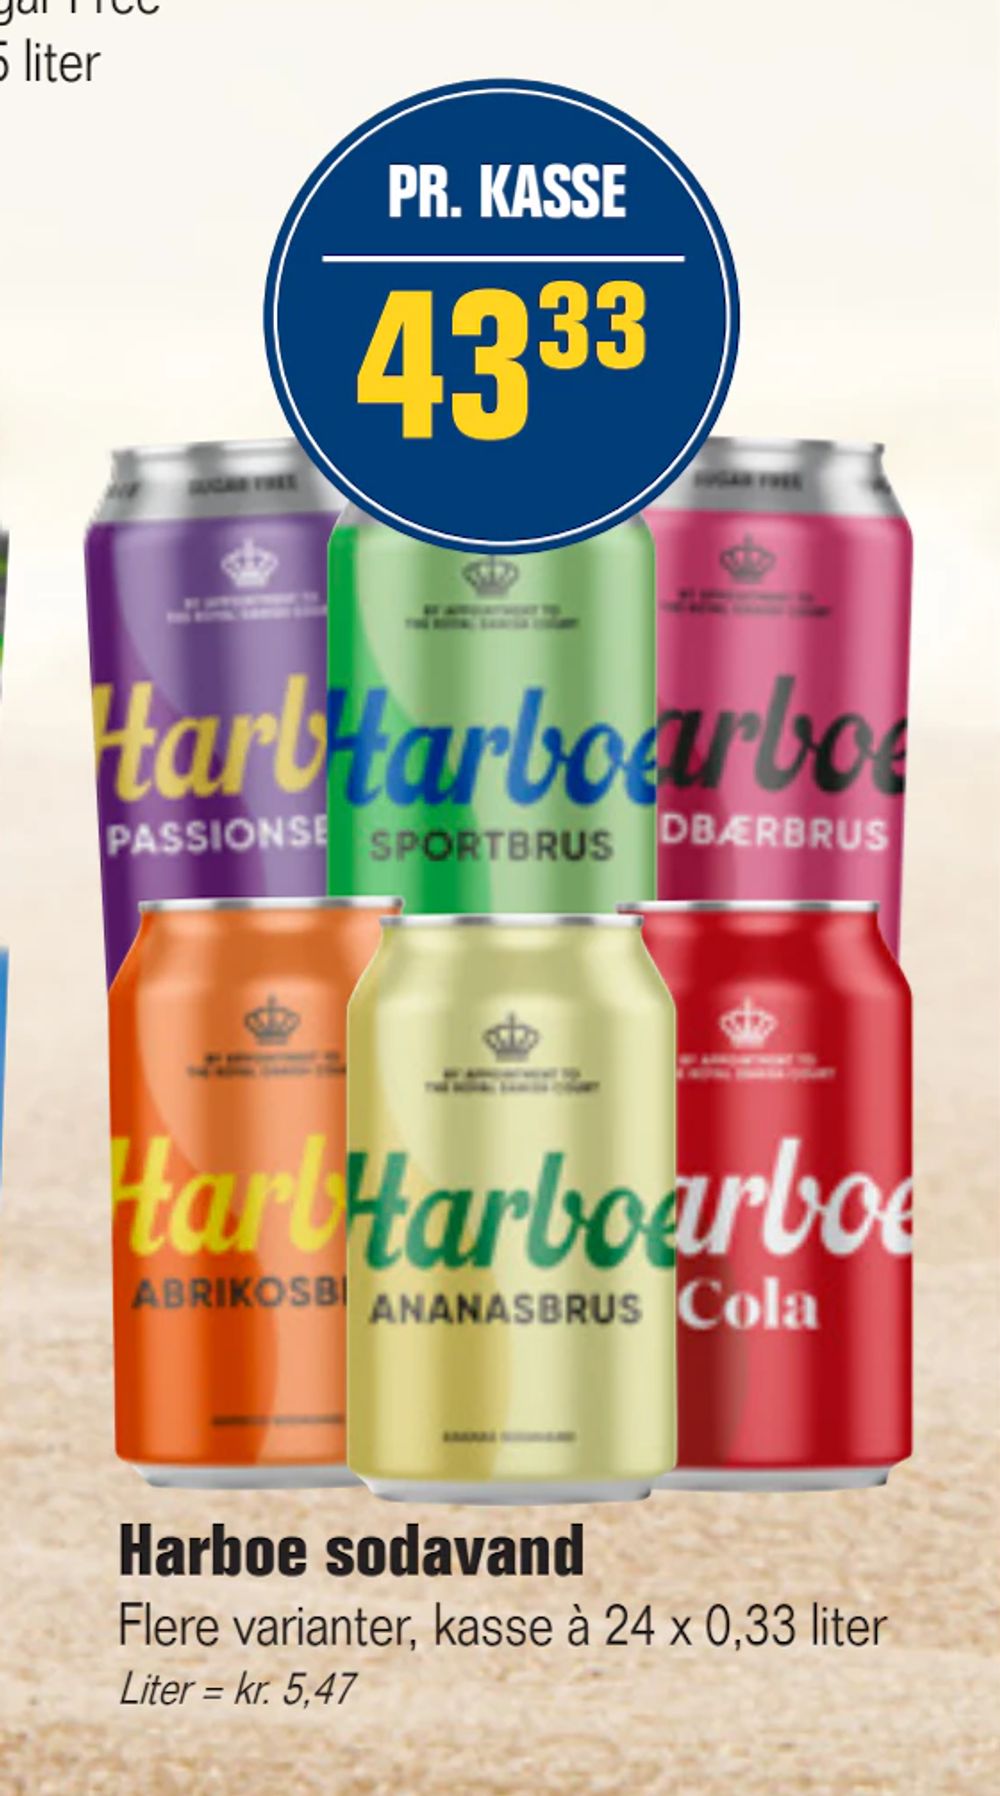 Tilbud på Harboe sodavand fra Otto Duborg til 43,33 kr.